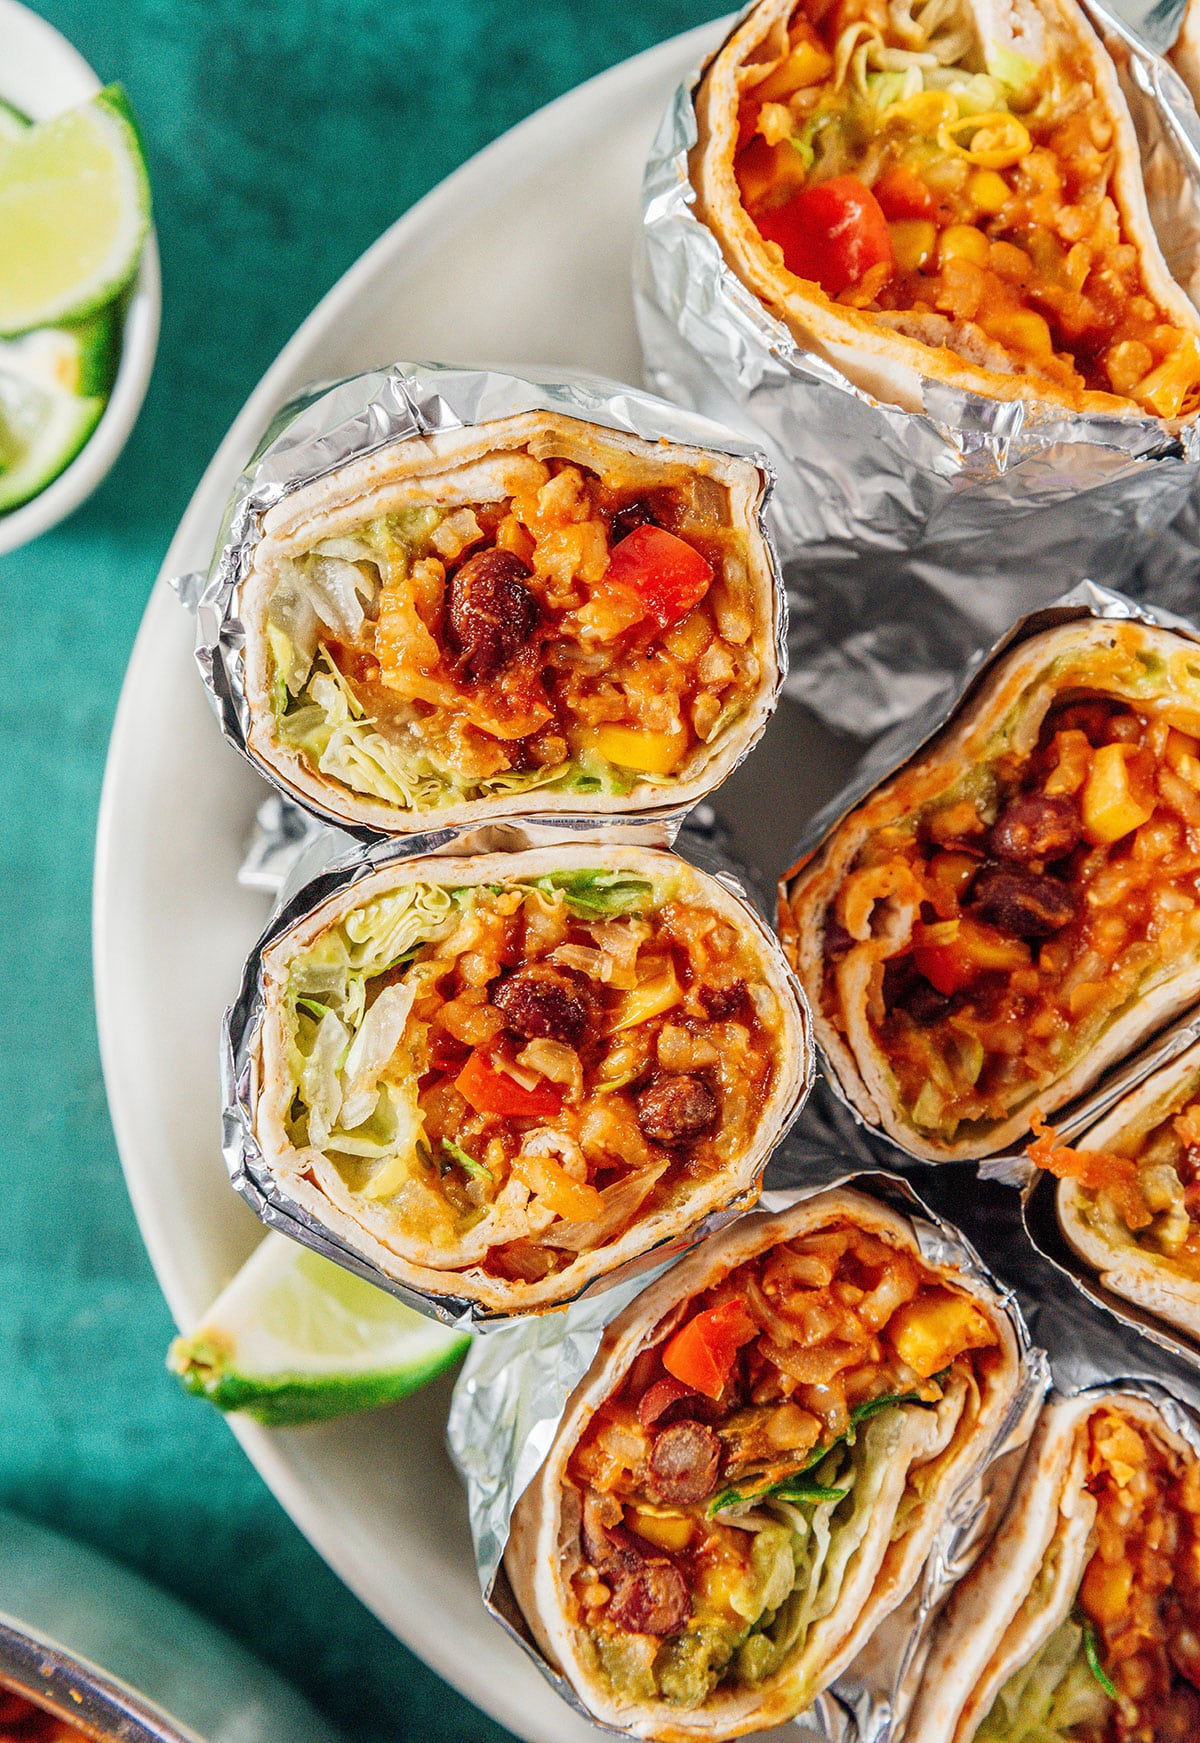 Vegan burritos wrapped in foil.